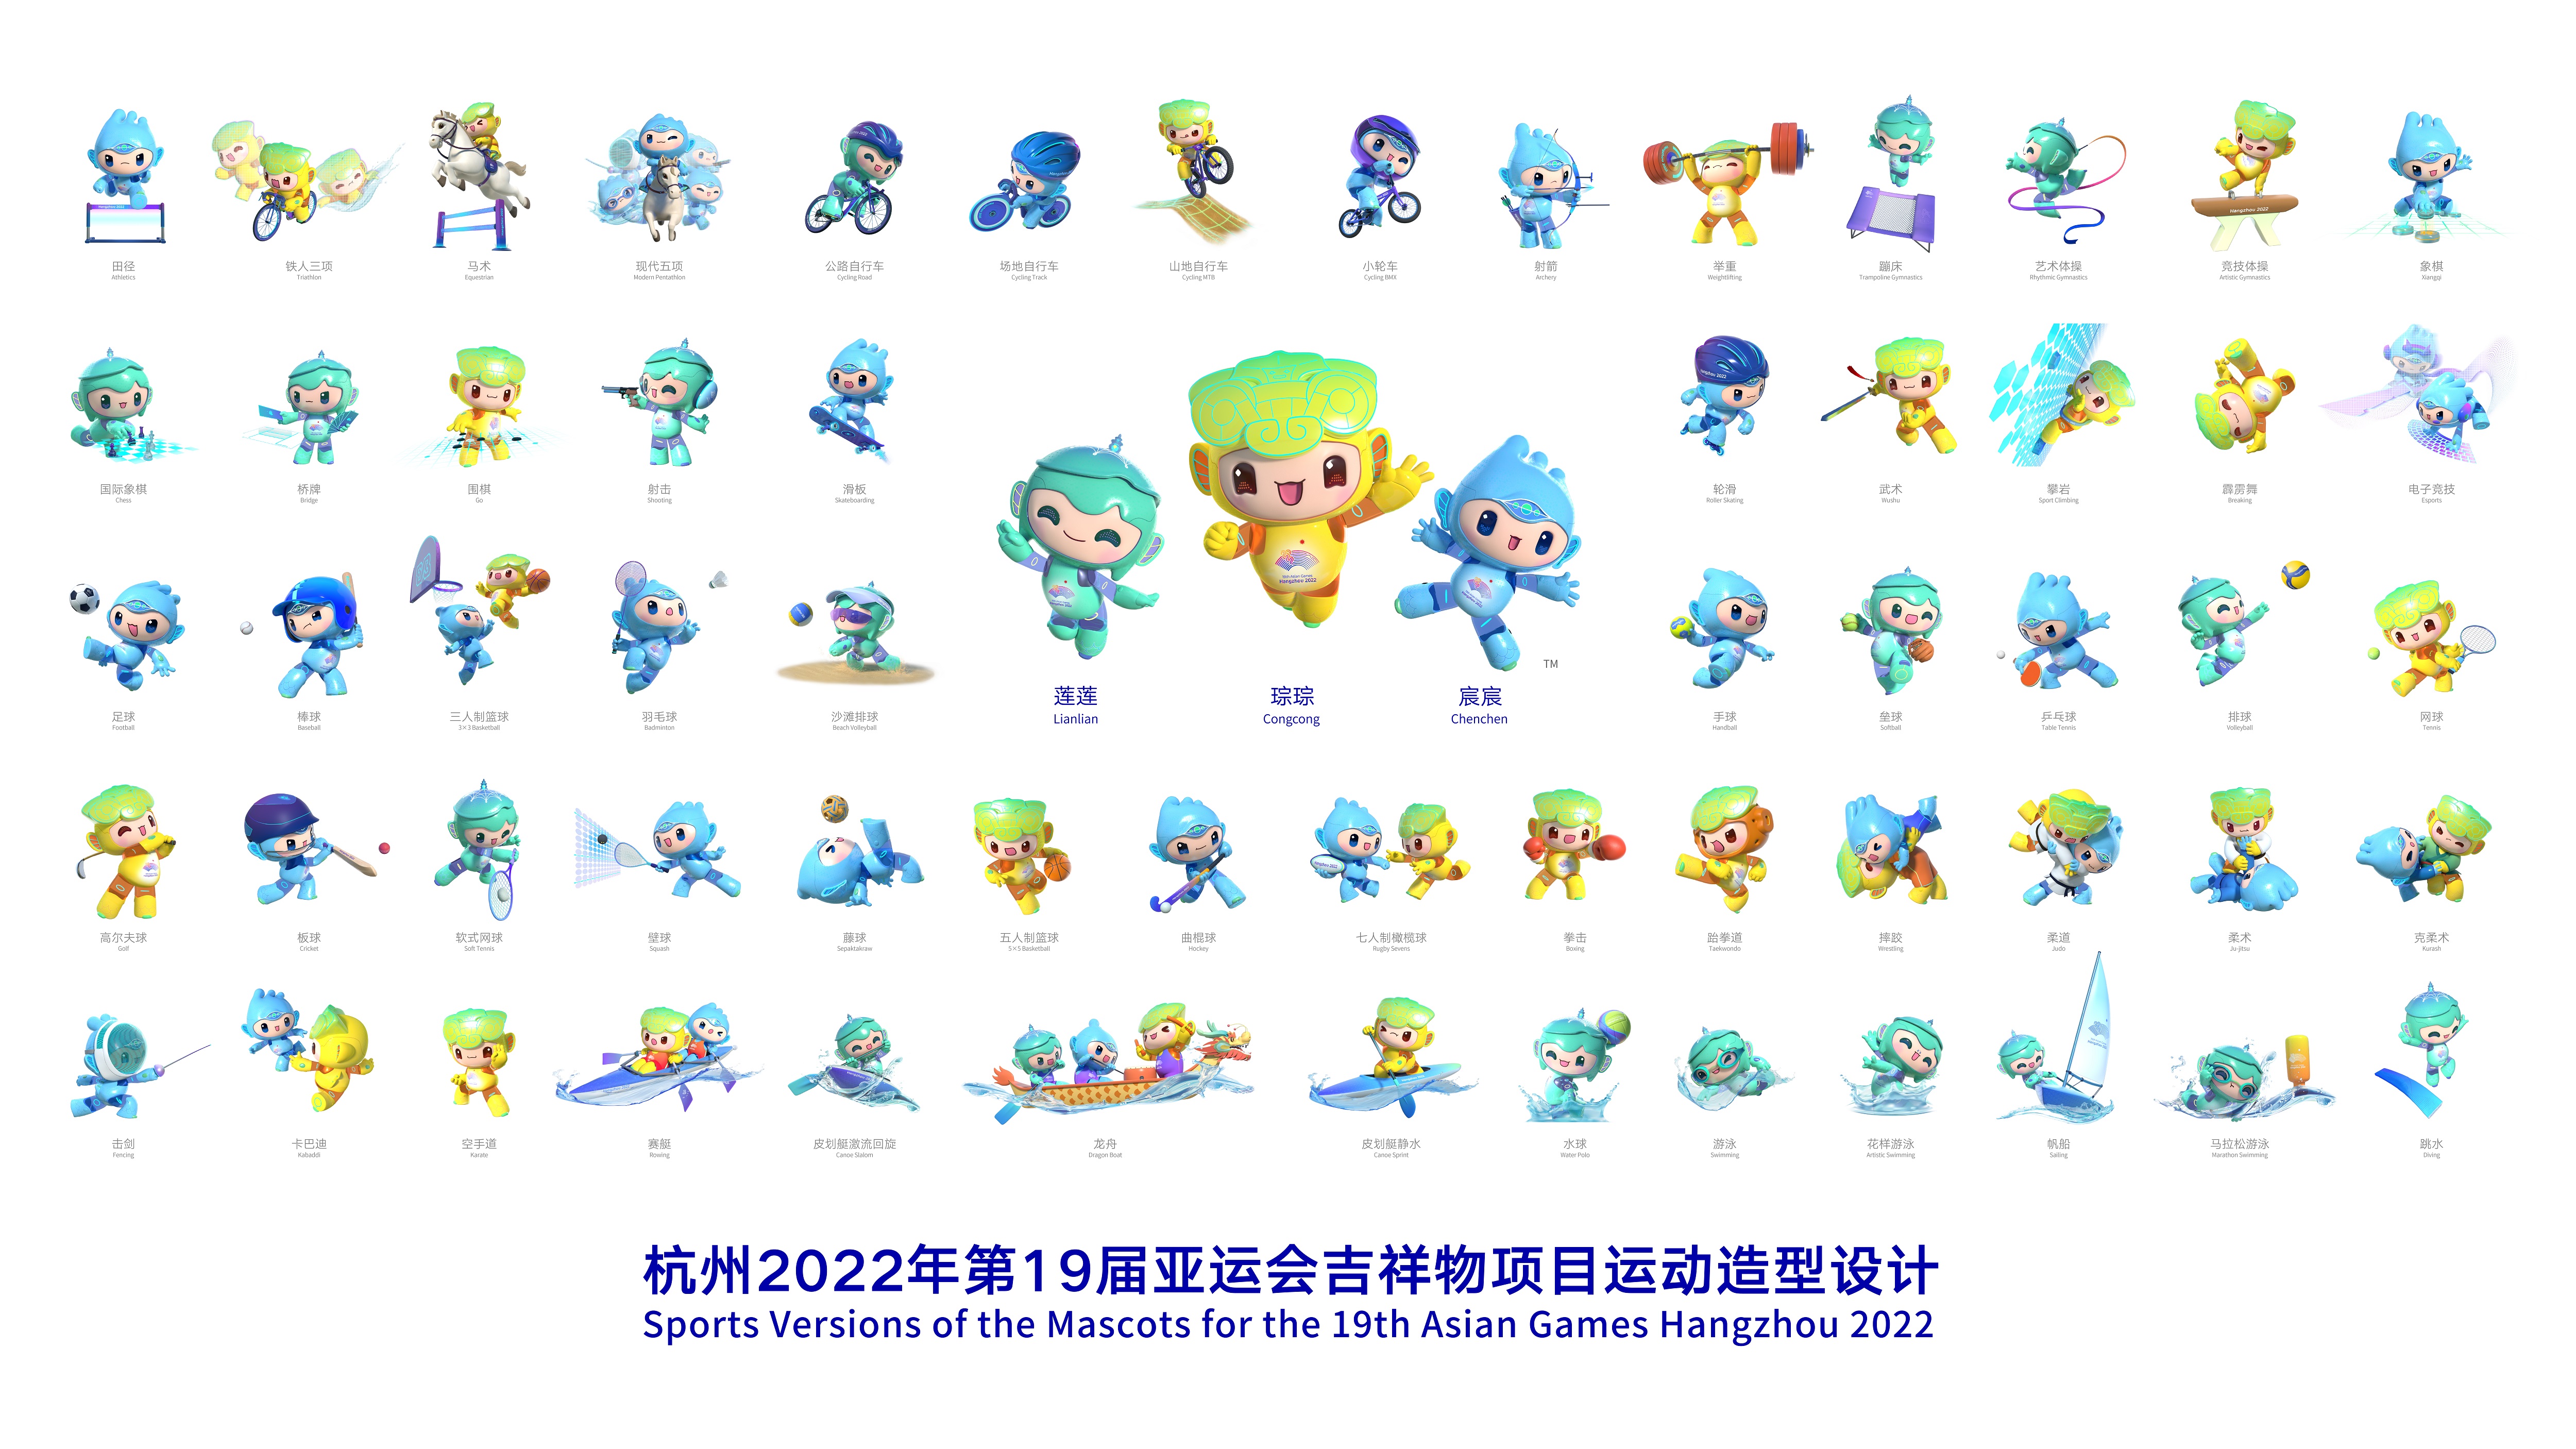 杭州2022年第19届亚运会吉祥物项目运动造型设计发布